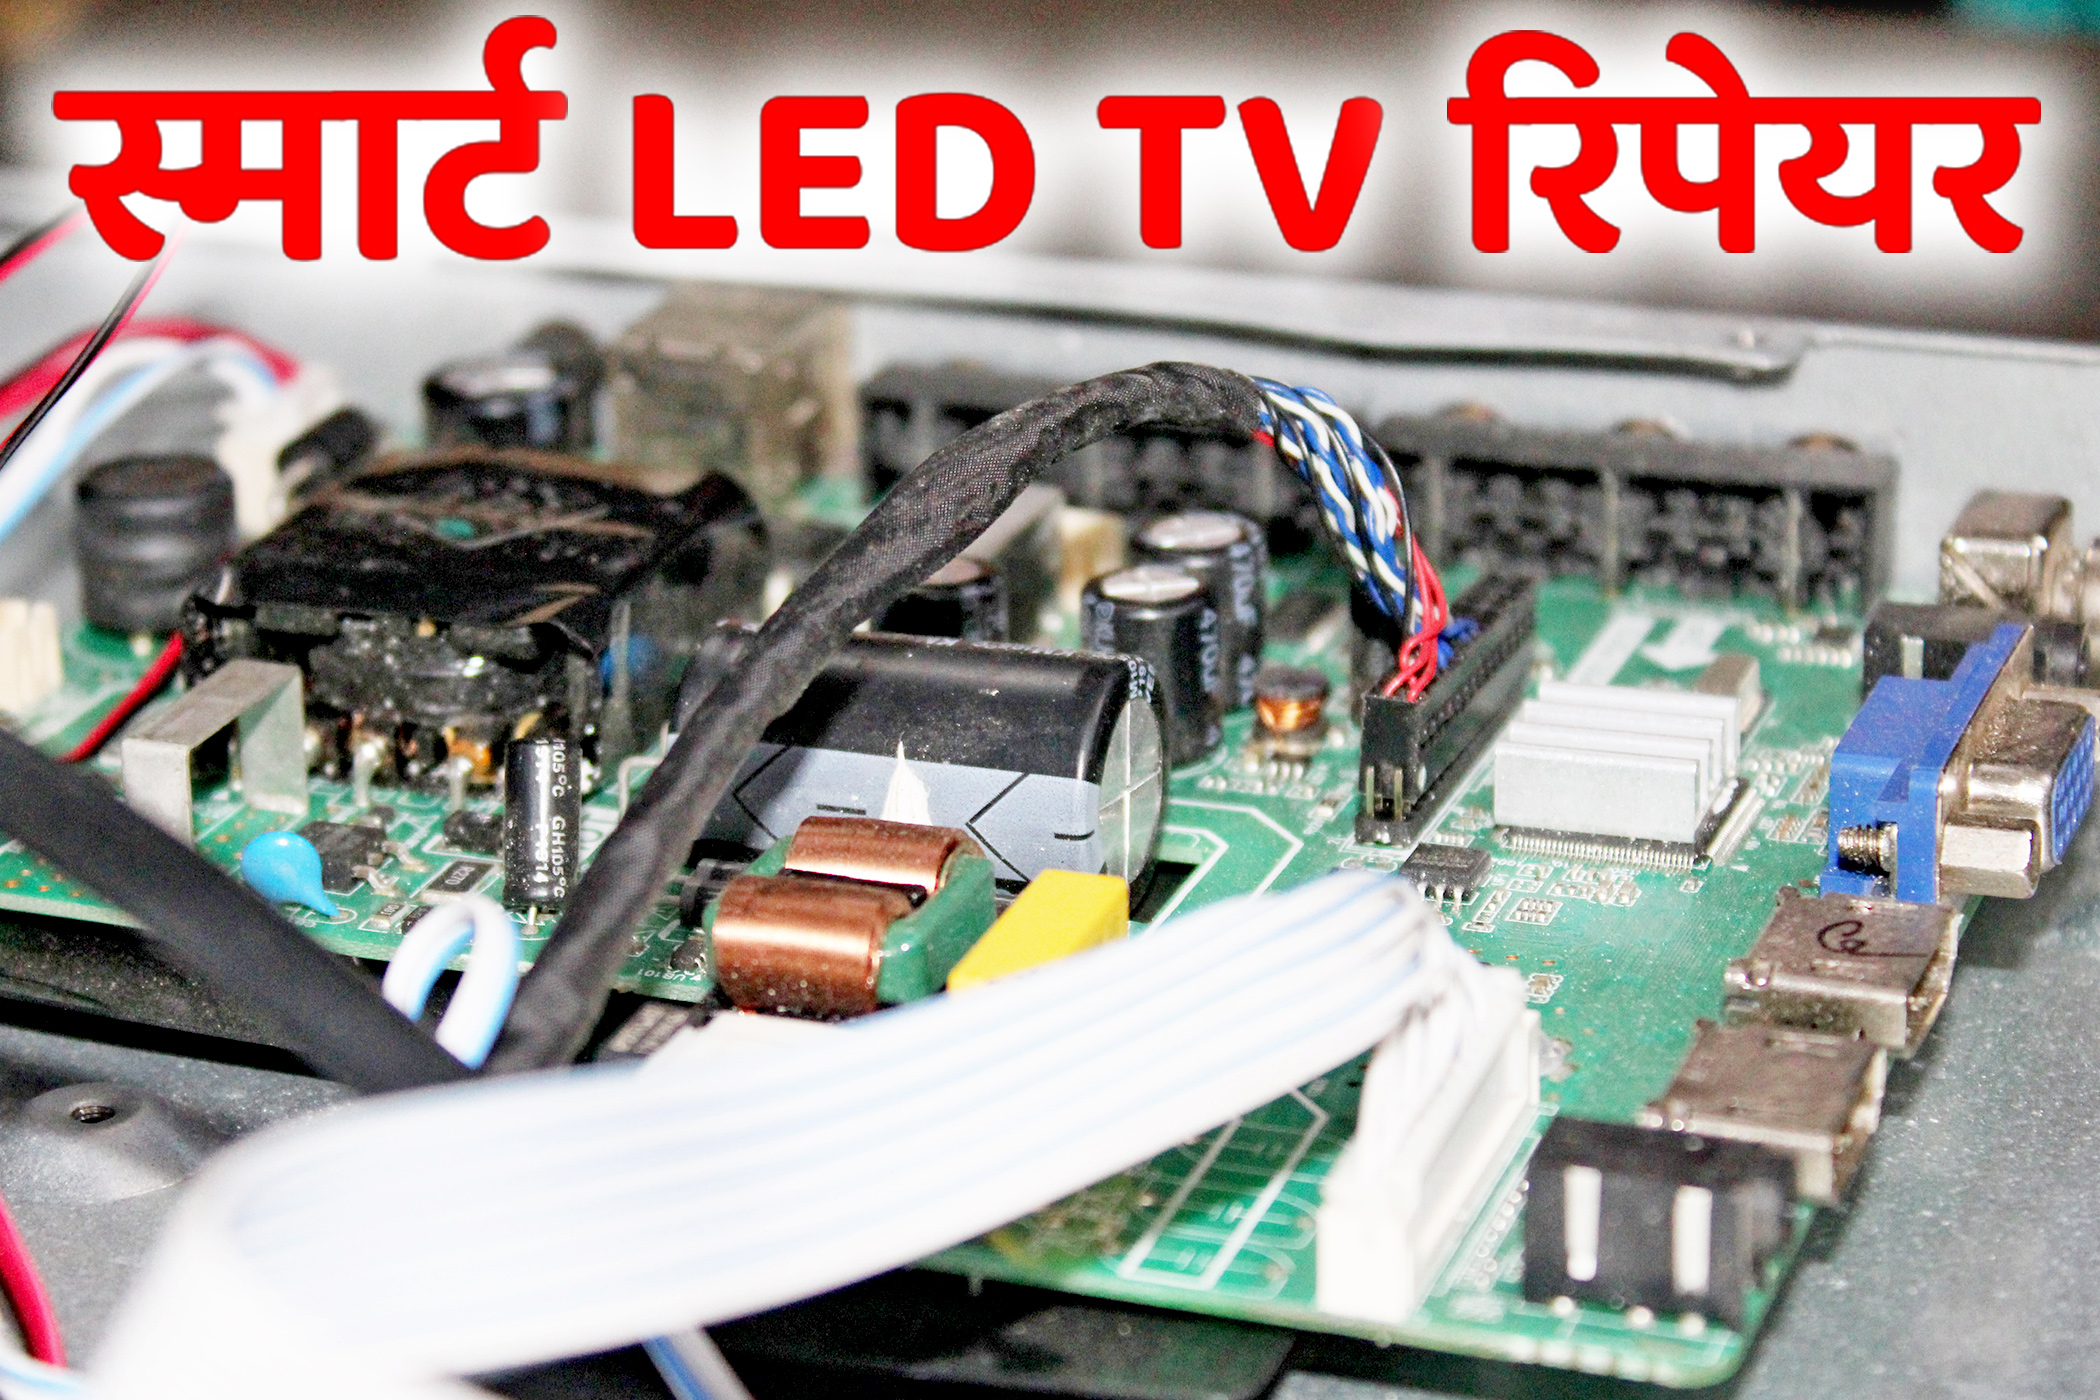 LED TV REPAIRING COURSE